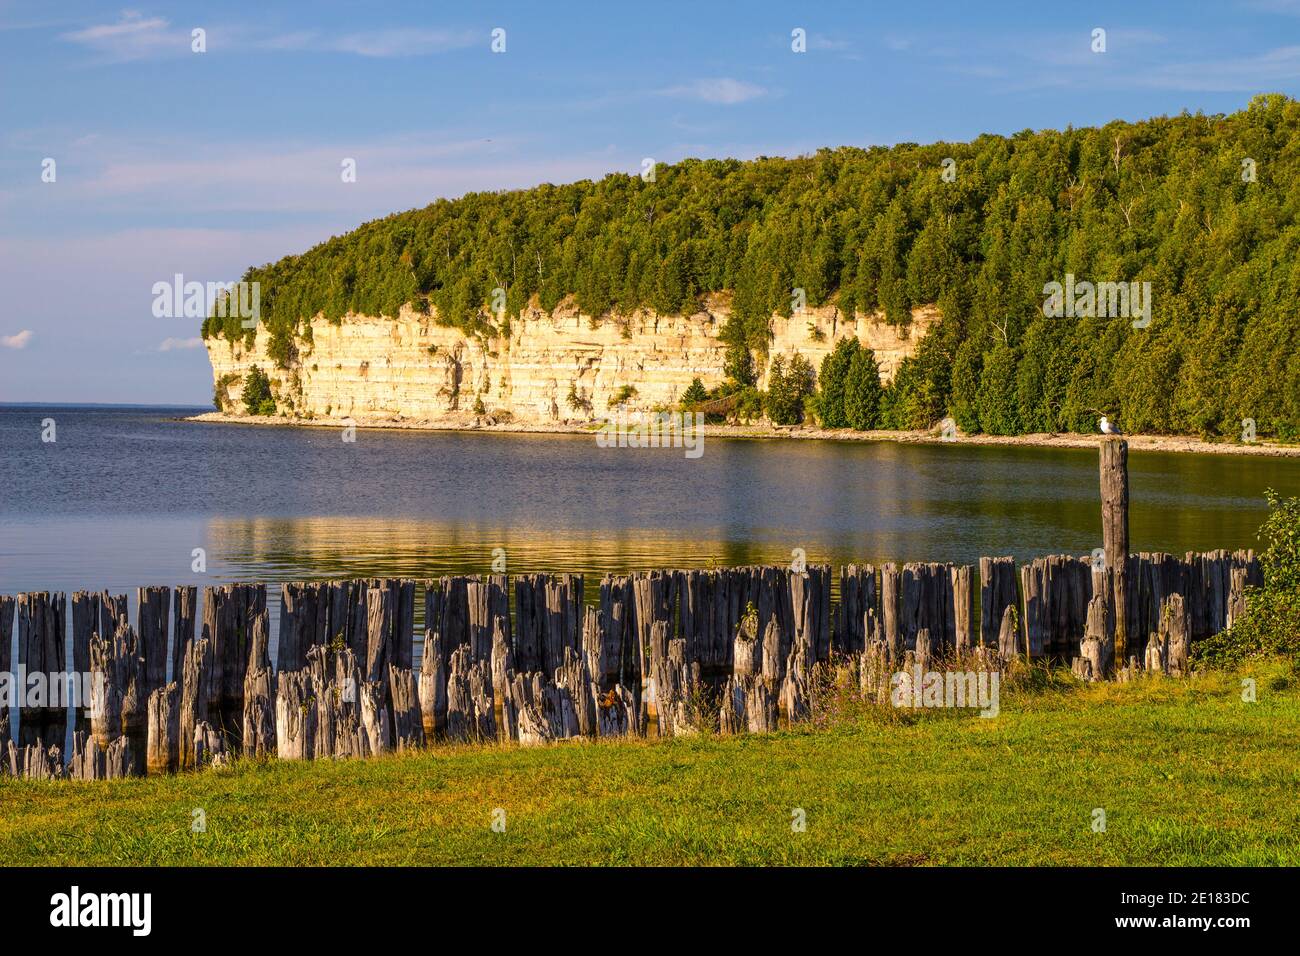 Parques estatales de Michigan. Hermosa vista del antiguo puerto y los acantilados de piedra caliza a lo largo de la costa del Lago Michigan en Fayette State Historical Park. Foto de stock